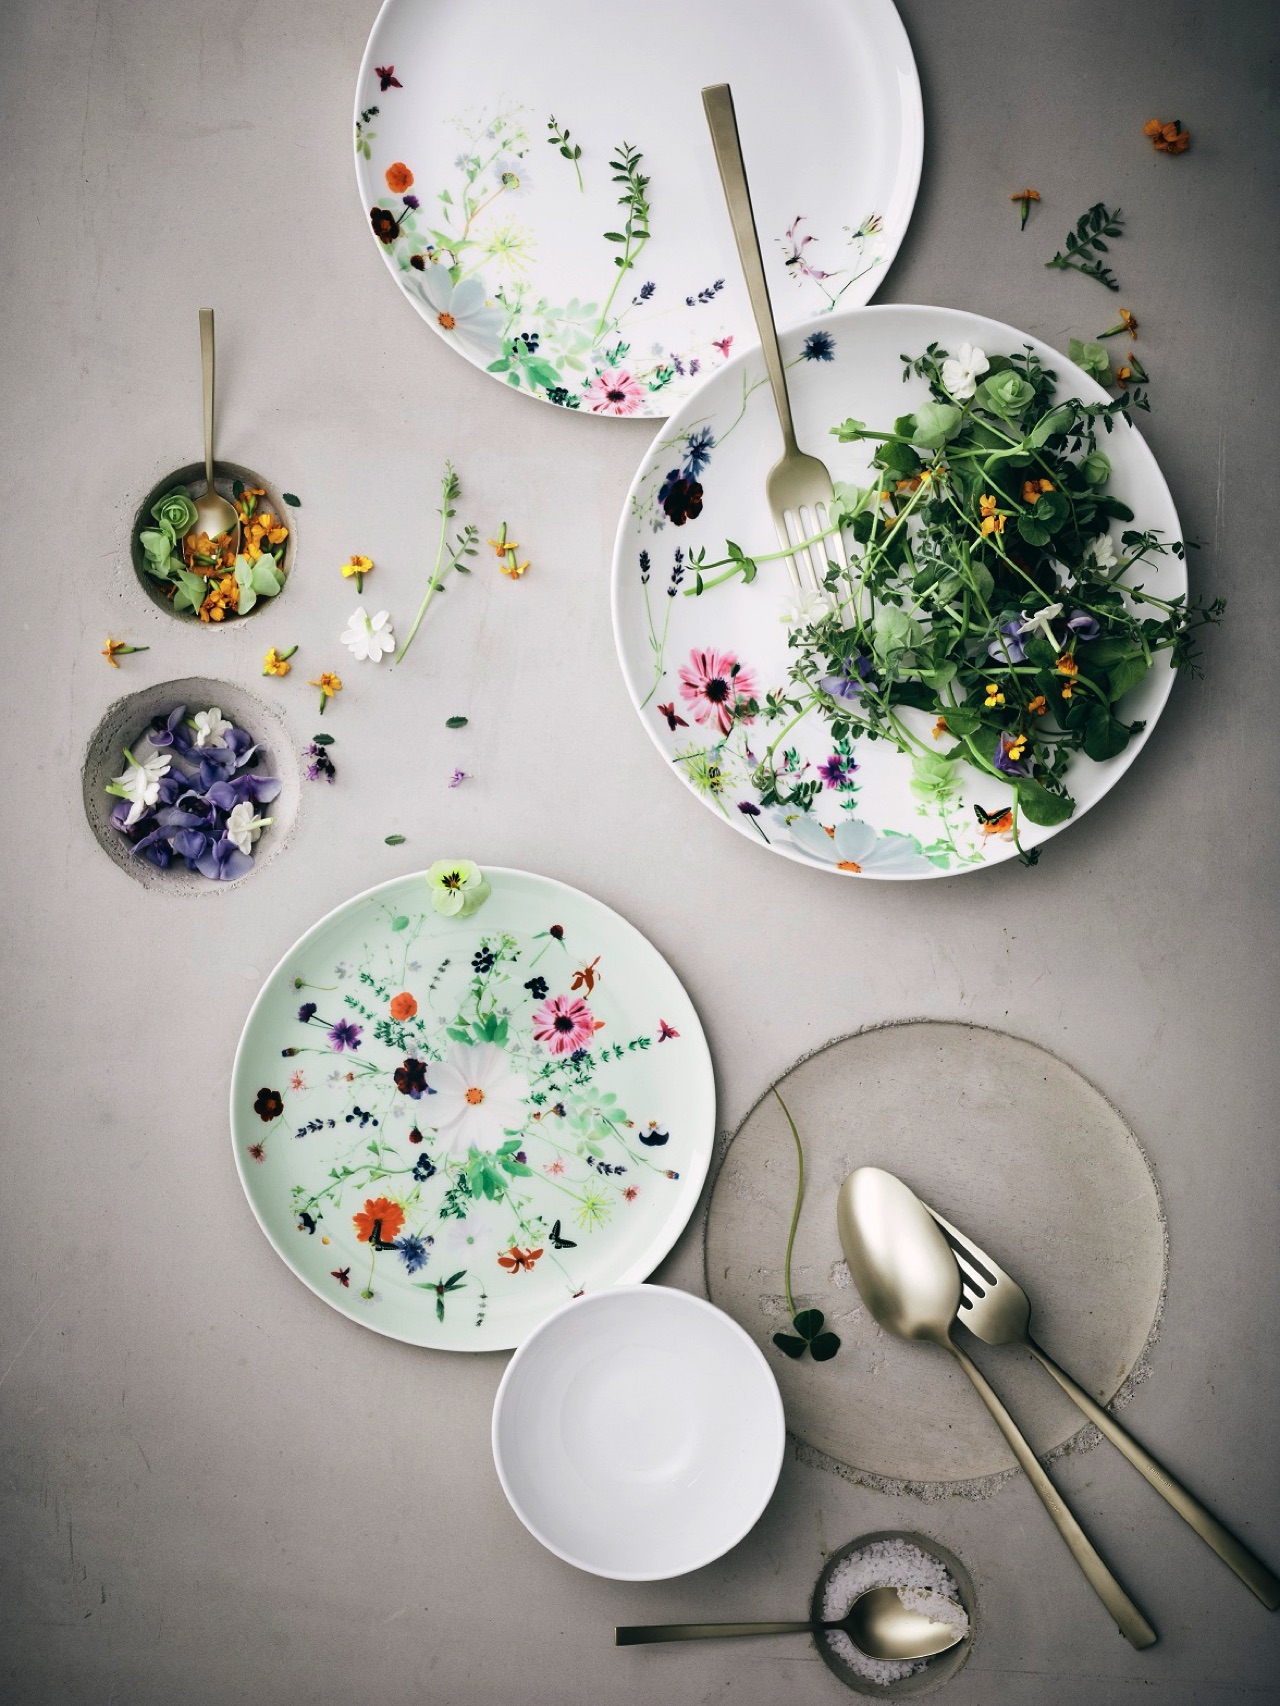 Essbare Blüten verschönern jedes Gericht und sind eine kleine Besonderheit. Frühlingshaftes Geschirr „Brillance Grand Air“ von Rosenthal.
